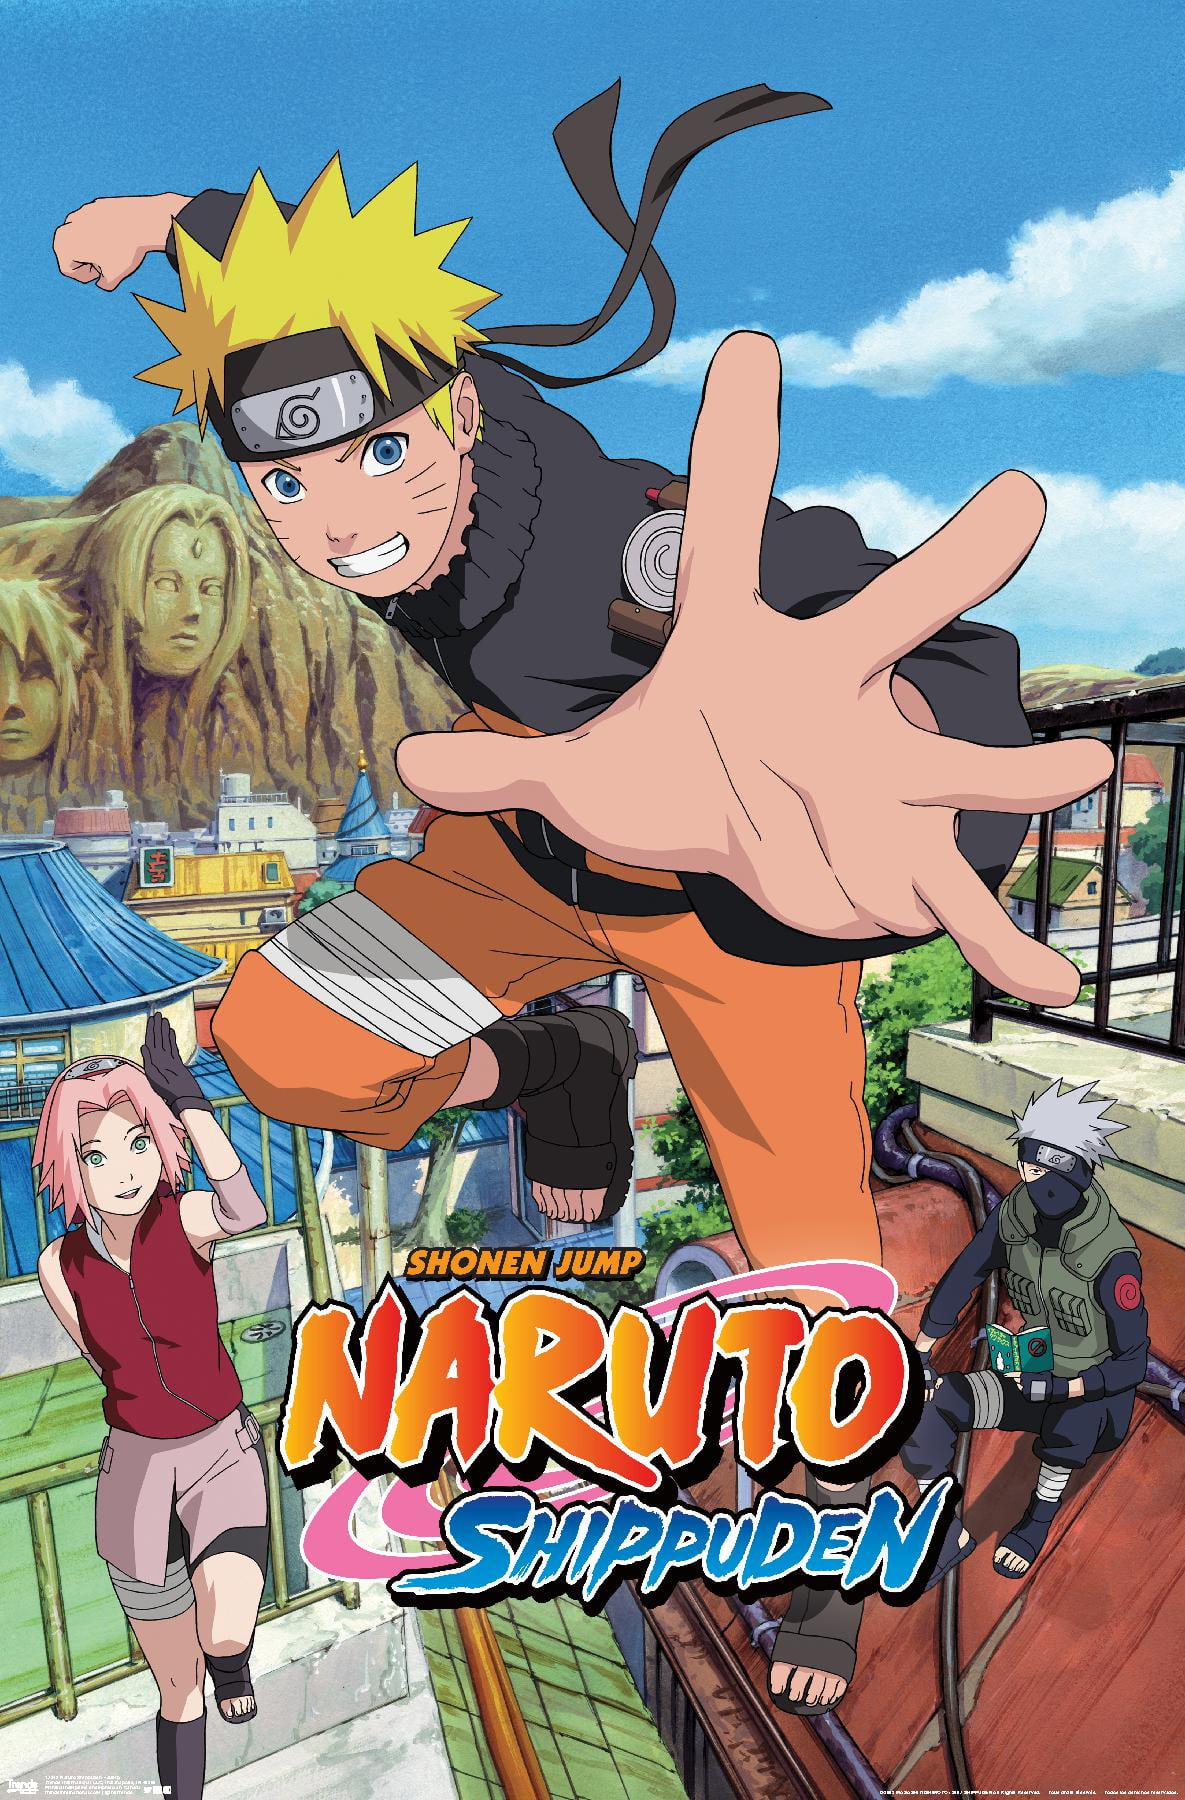 Naruto Online chega ao Brasil em breve com cinco classes disponíveis